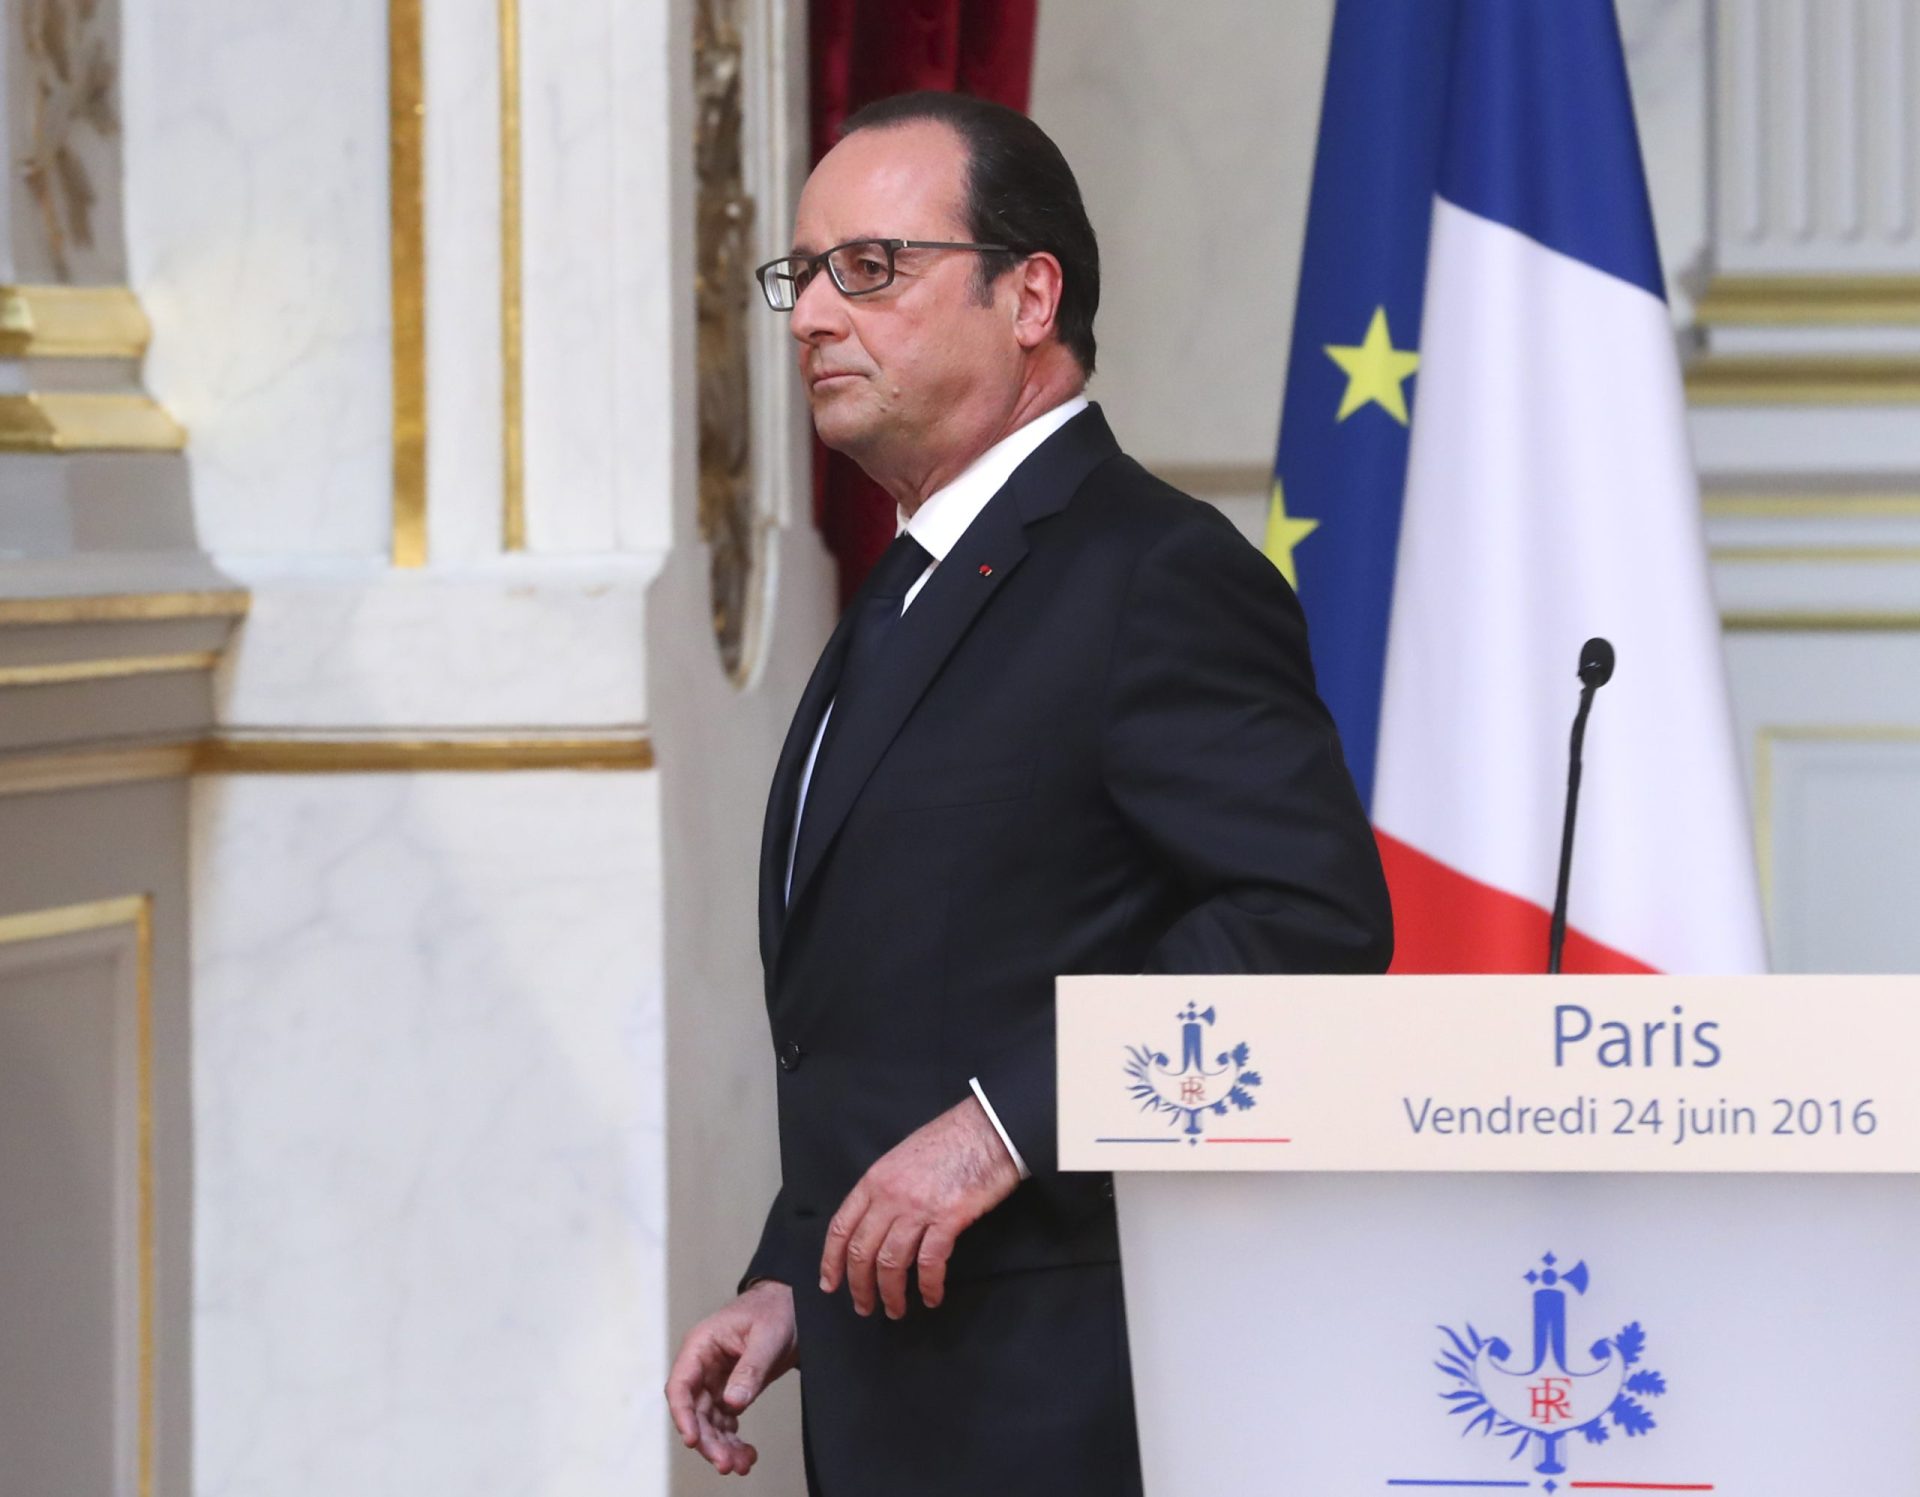 Hollande: atentado em Istambul foi “um ato abominável”